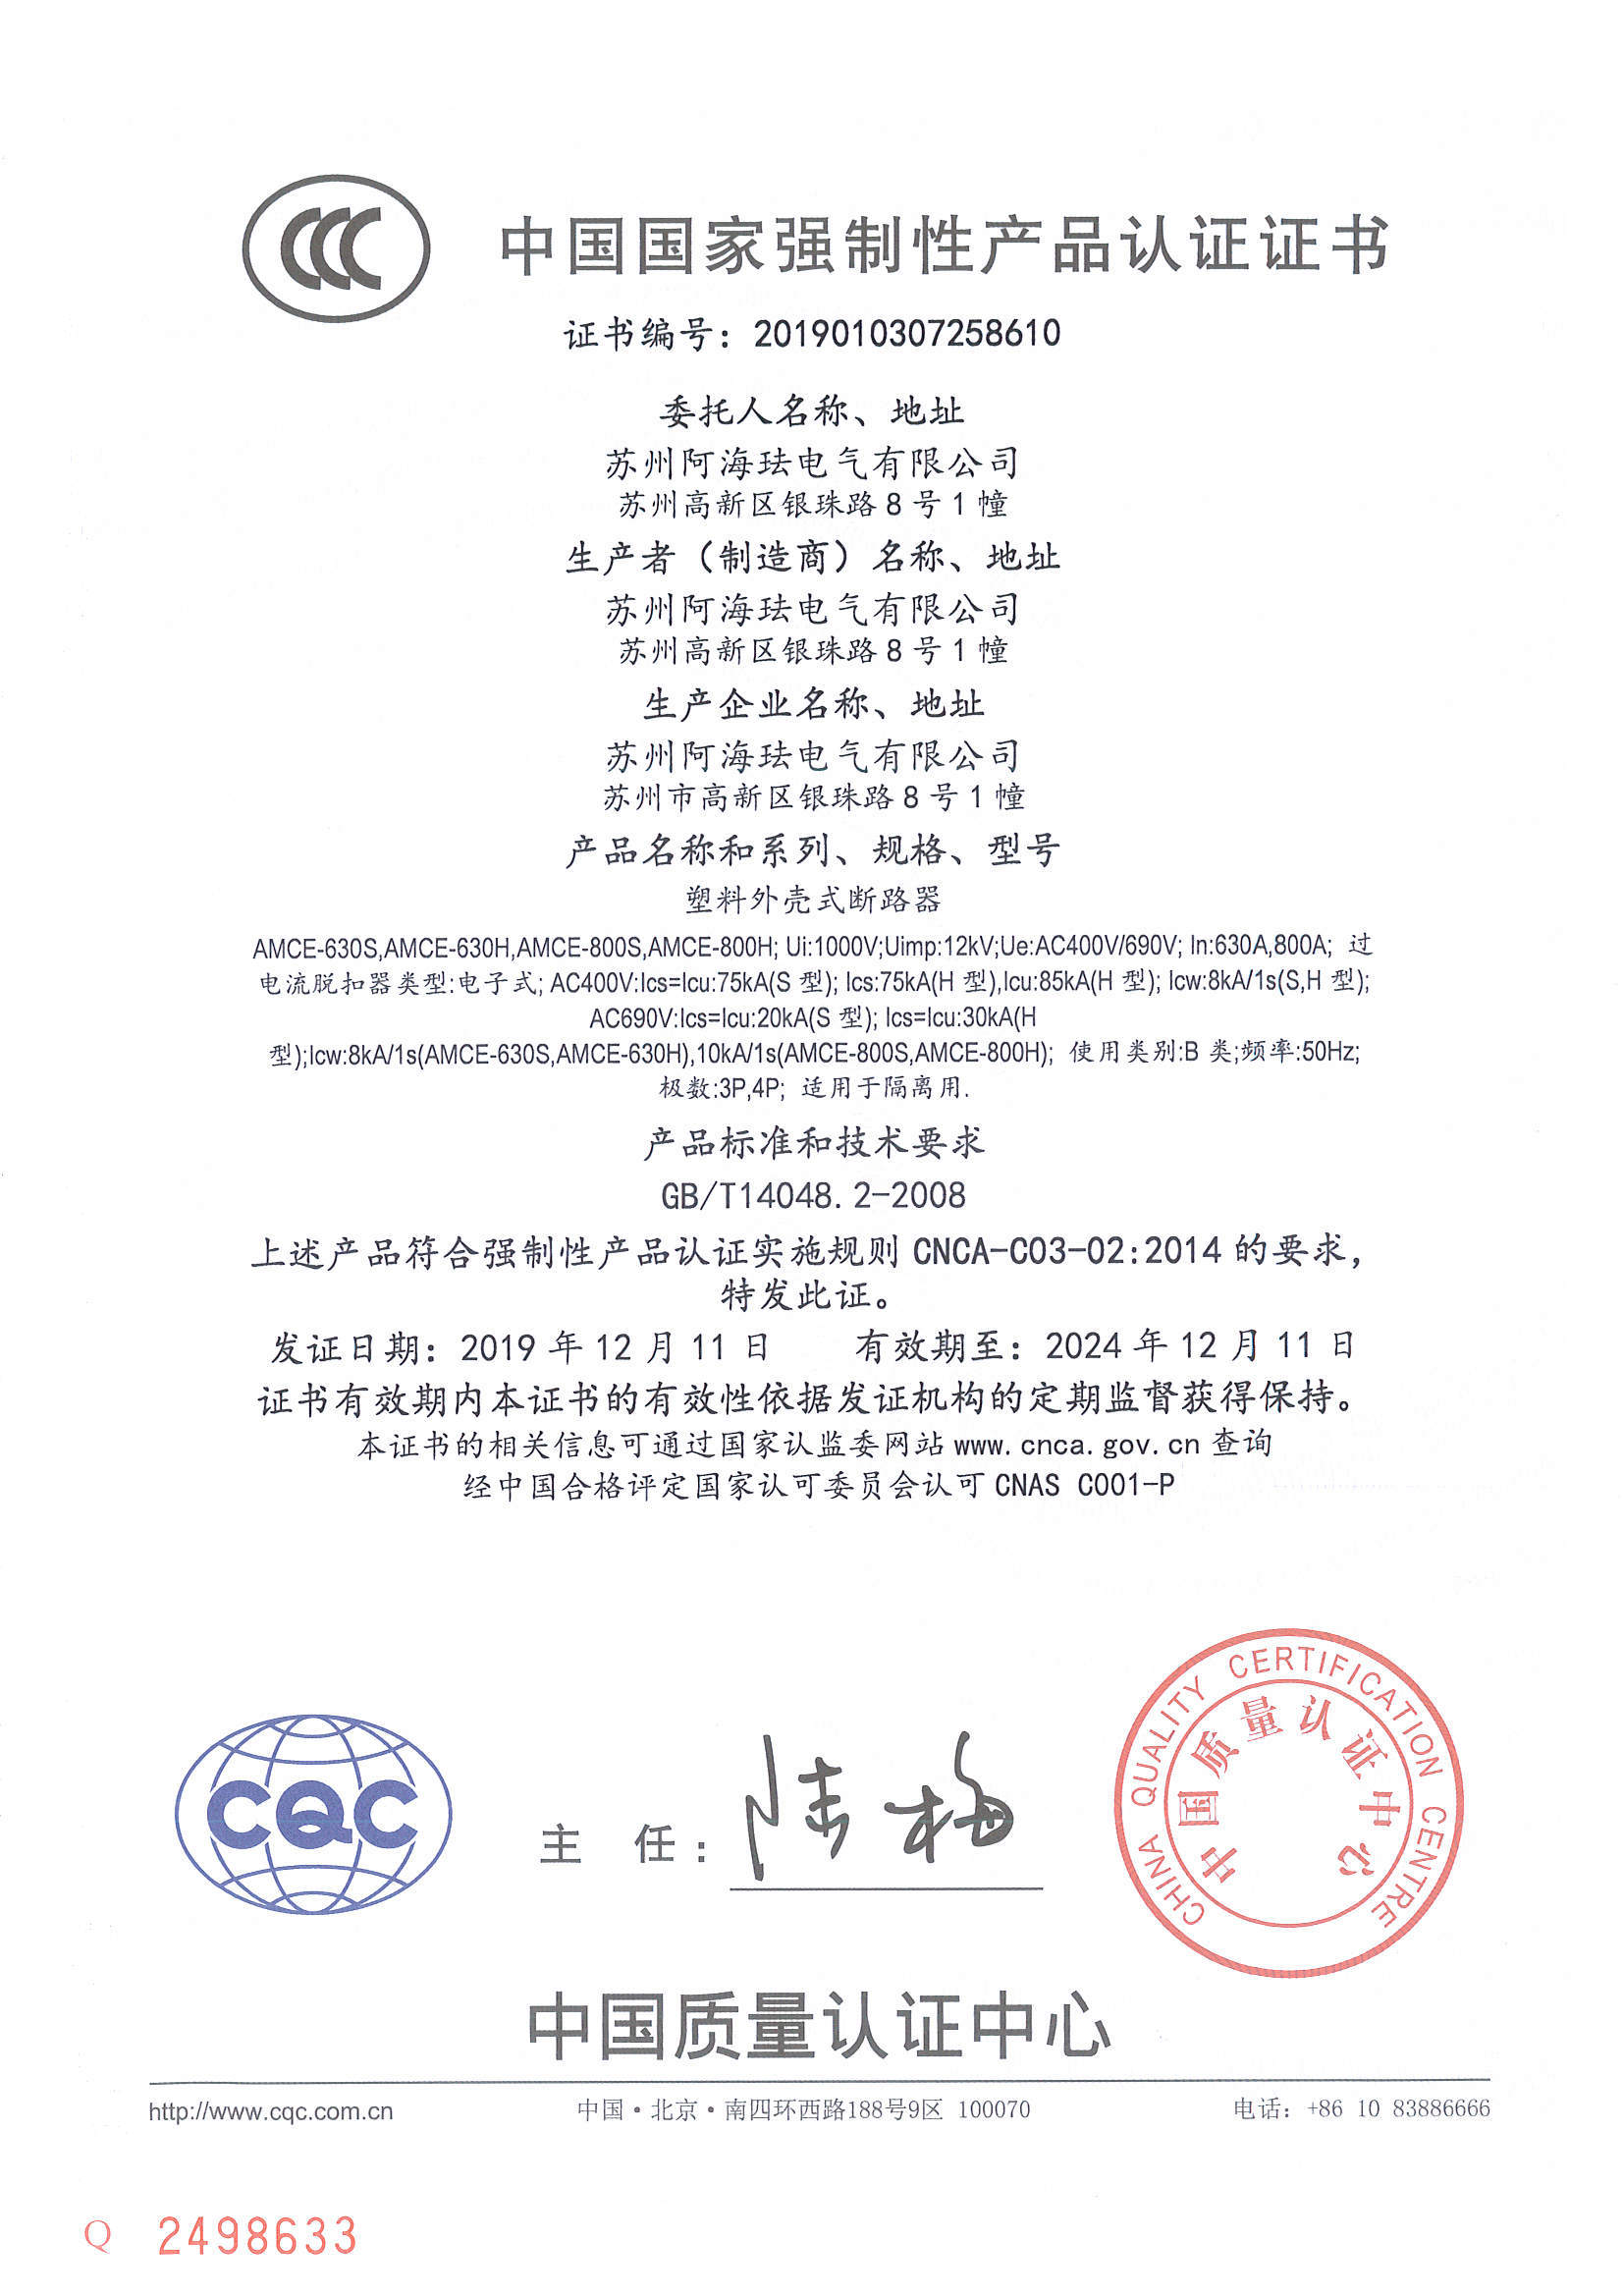 AMCE800/630 CCC certificate